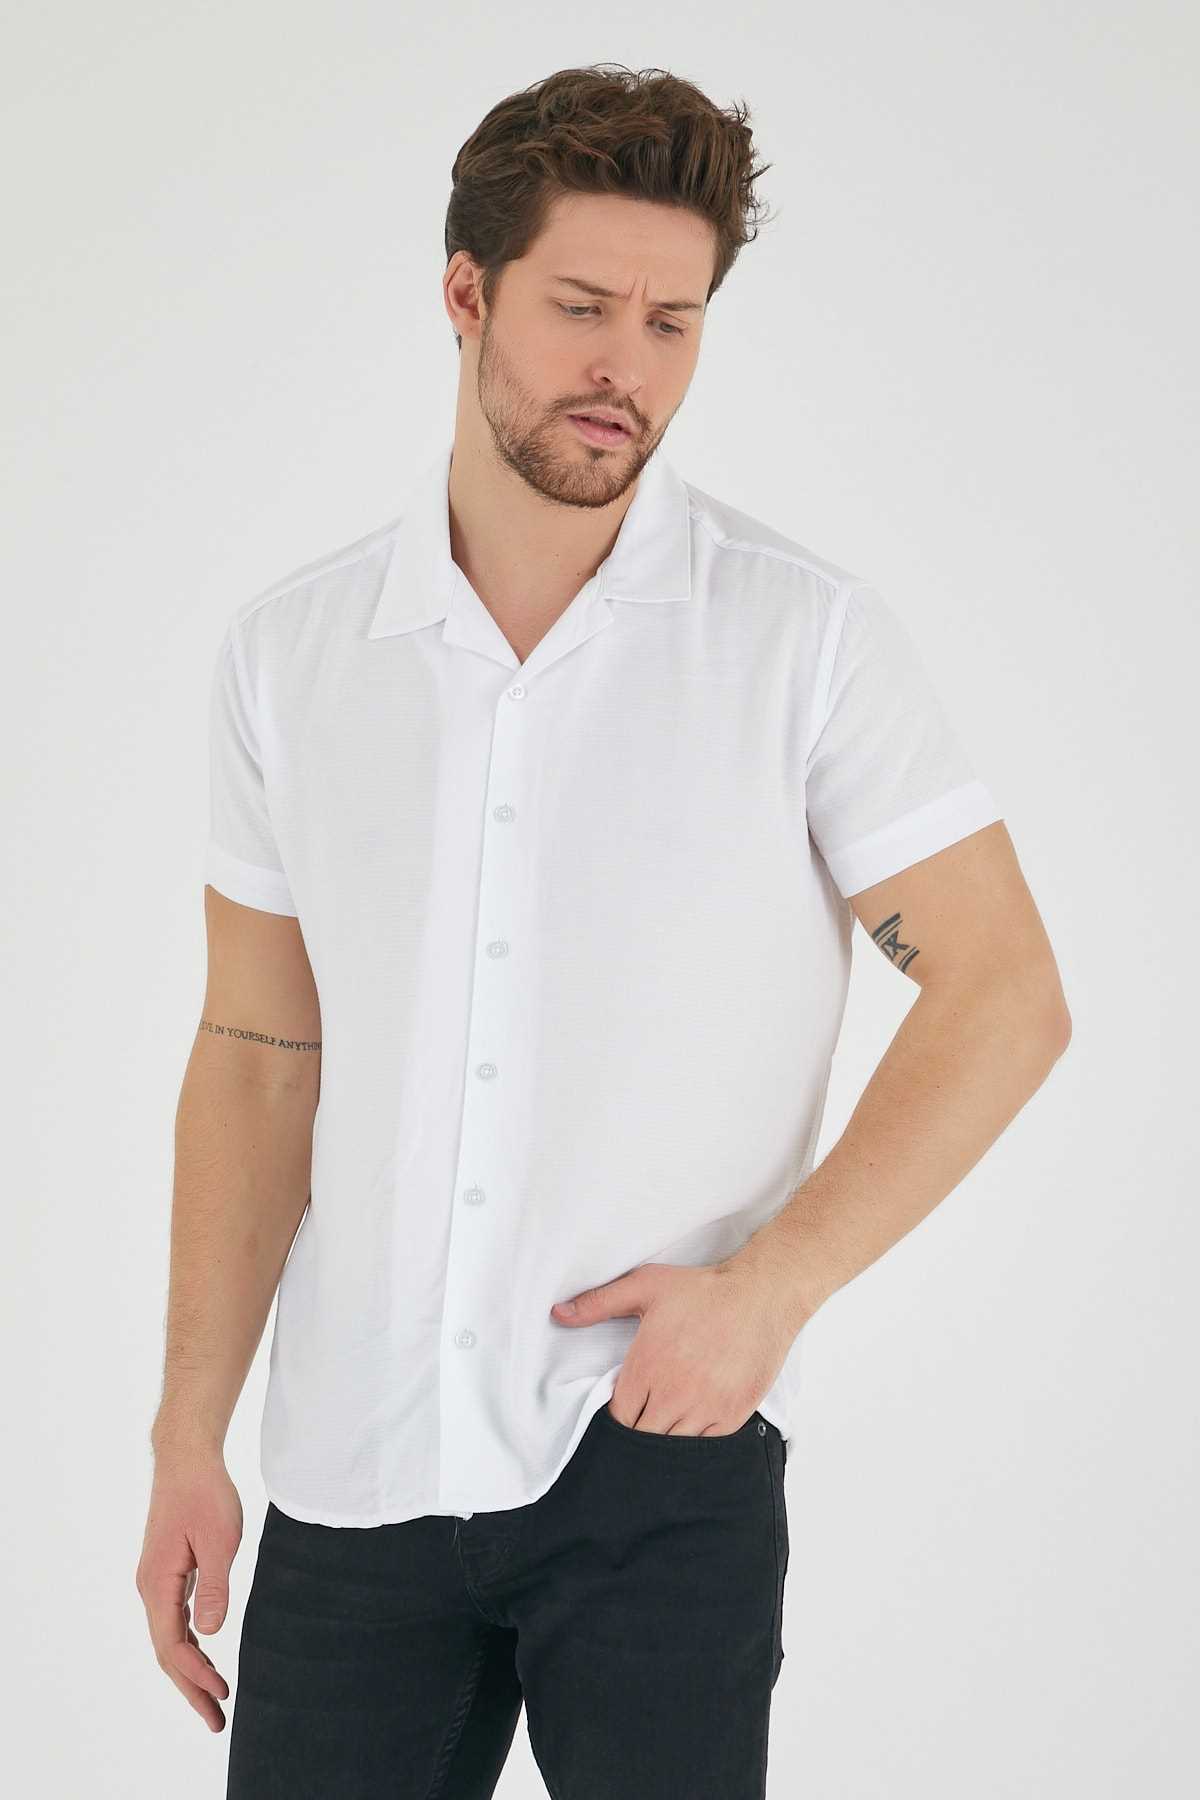 خرید پیراهن مردانه از ترکیه برند Mero Life رنگ سفید ty246419205